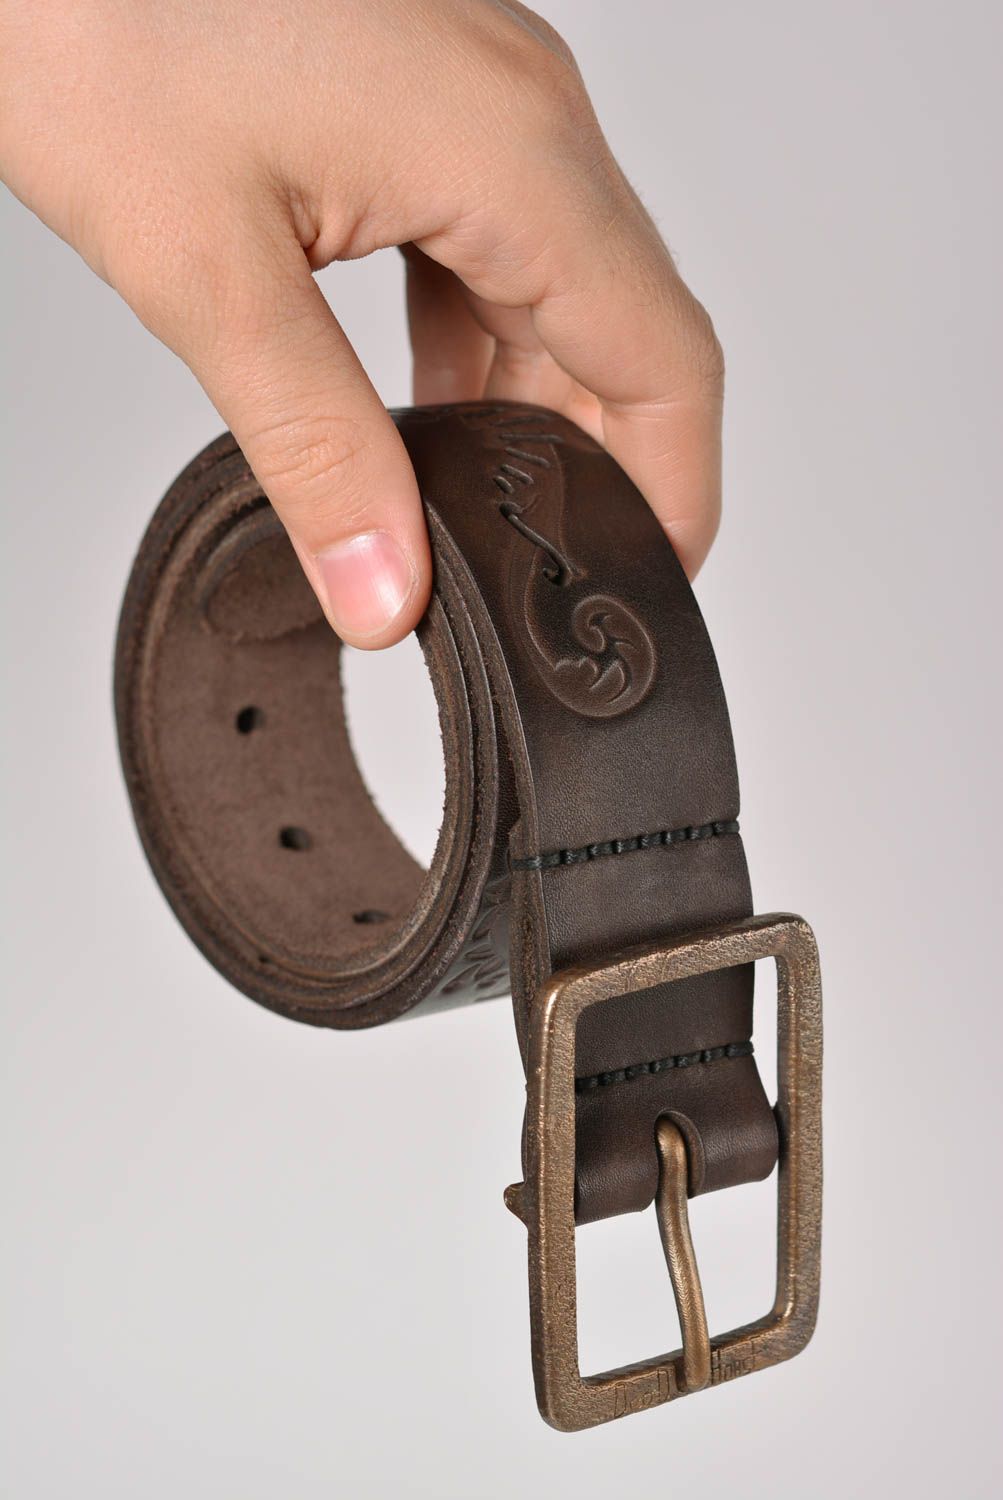 Cinturón de cuero hecho a mano inusual ropa masculina accesorio de moda estiloso foto 3